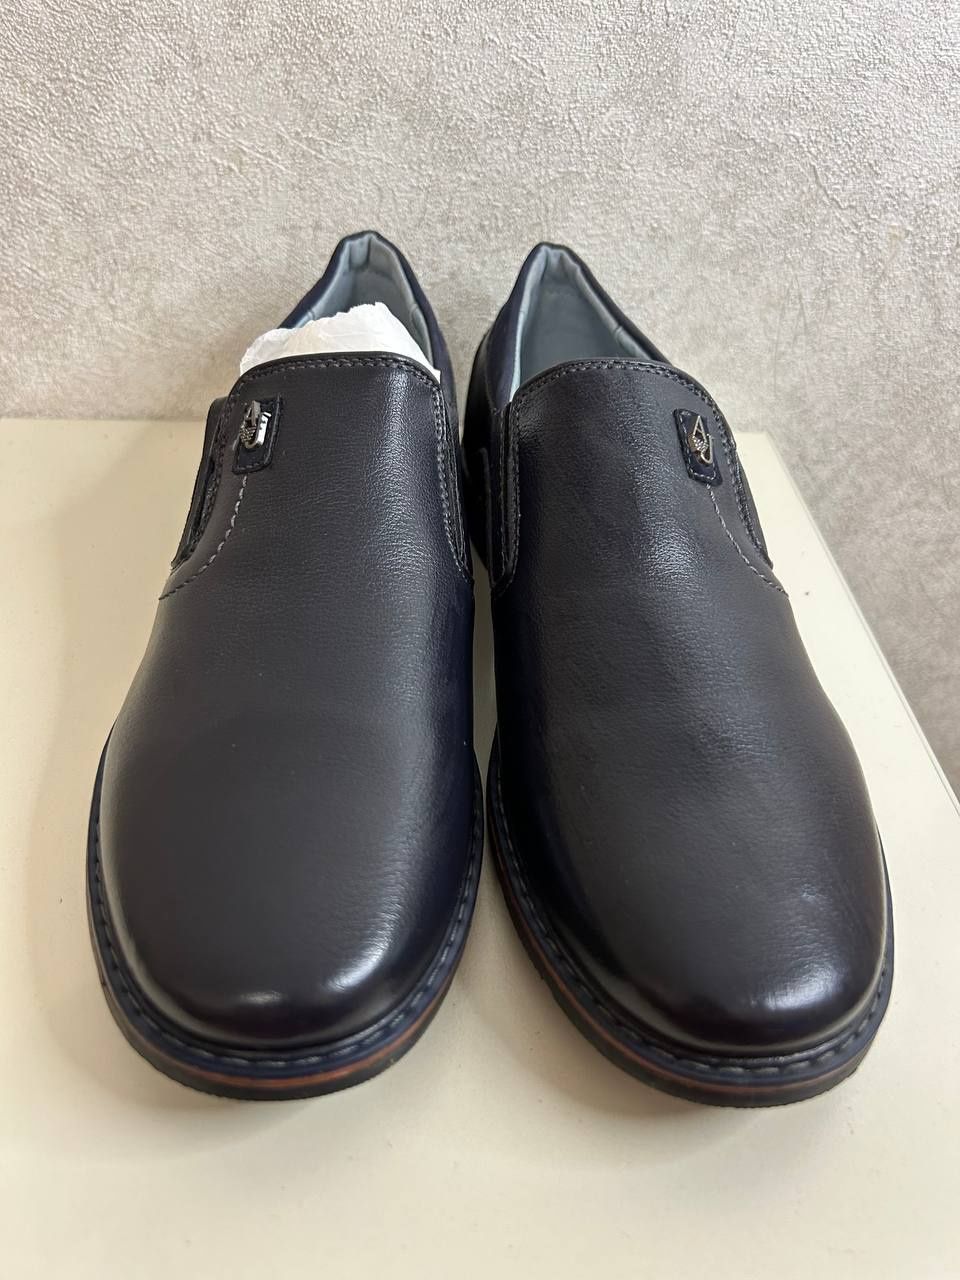 Новые туфли детские подростковые мужские 34-41 размеры недорого